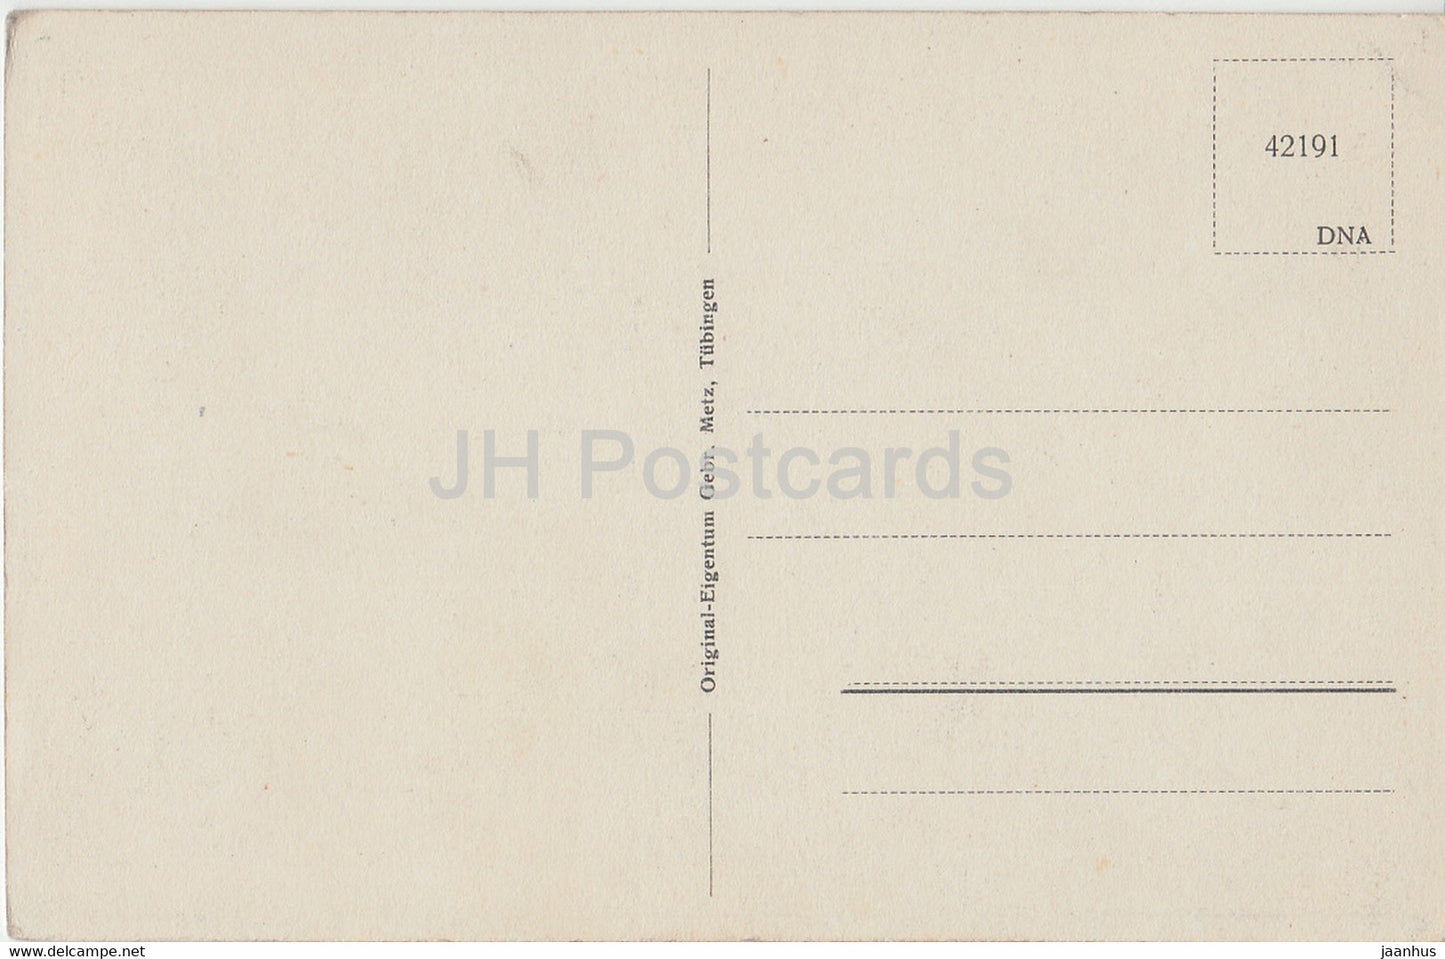 Lindau - Rathaus - 42191 - old postcard - Germany - unused